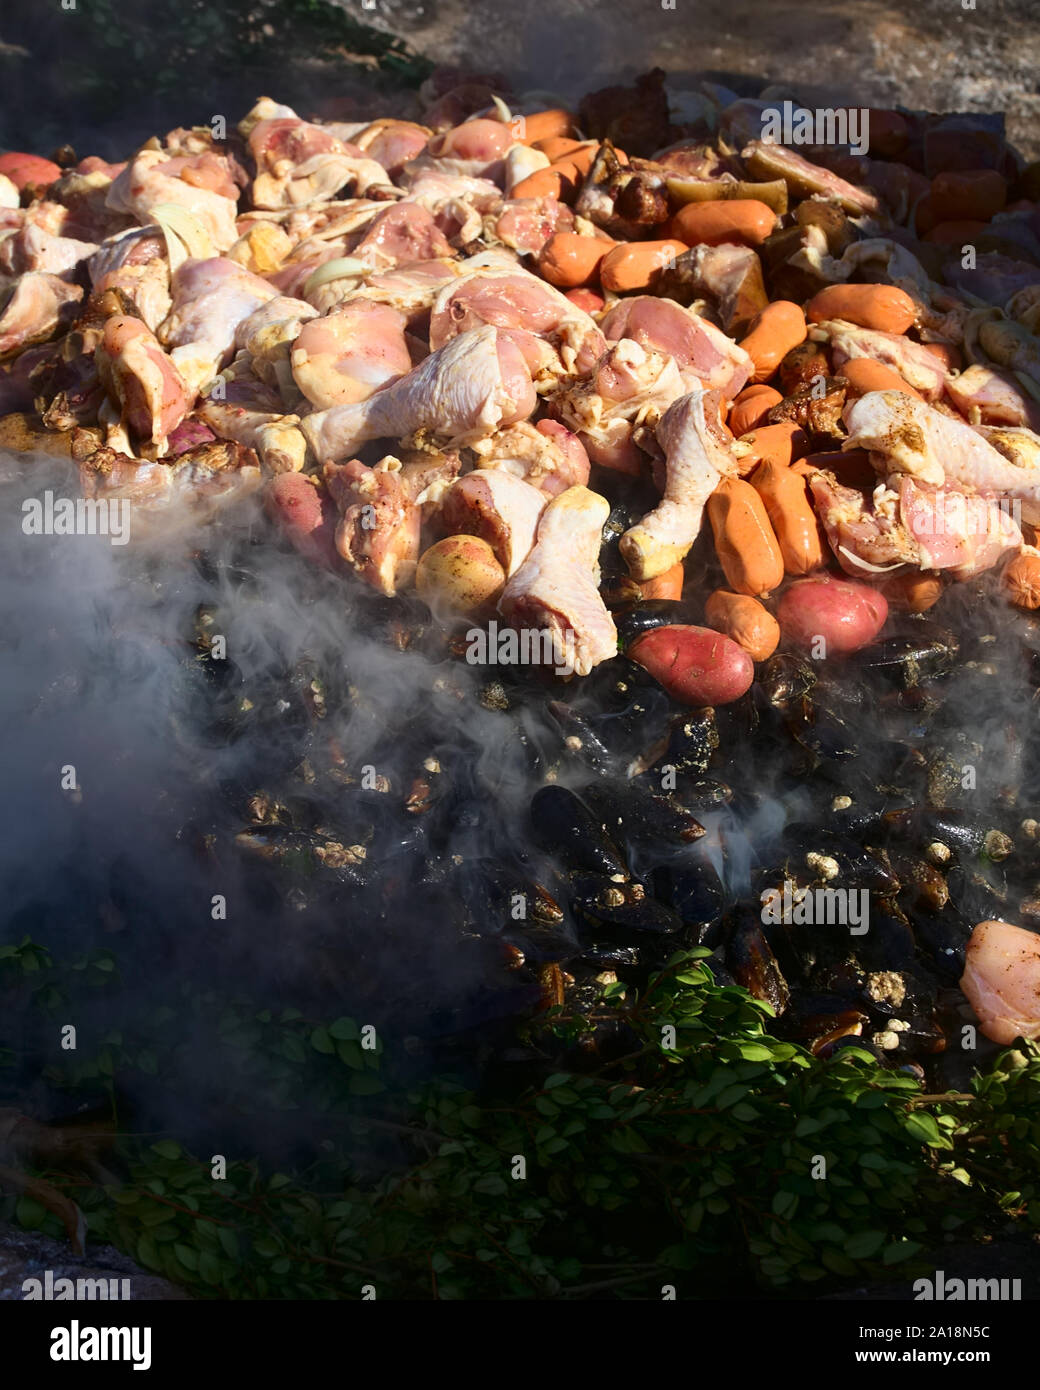 ACHAO, CHILE - Februar 6, 2016: Das traditionelle Gericht Chilotan Curanto al Hoyo in einem Loch im Boden vorbereitet wird. Stockfoto